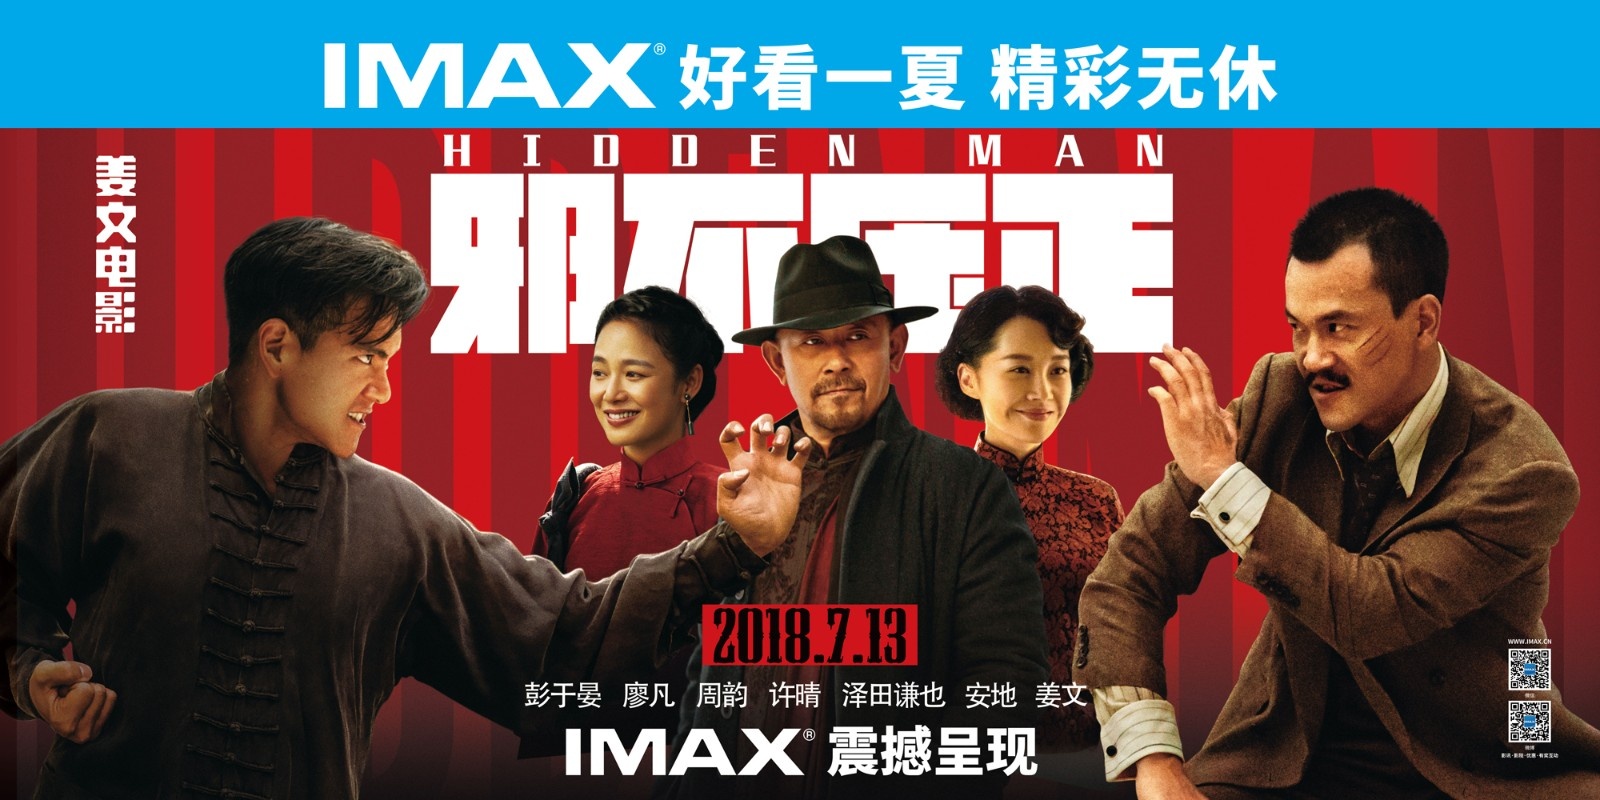 姜文电影重返IMAX大银幕 浪漫书写民国快意恩仇